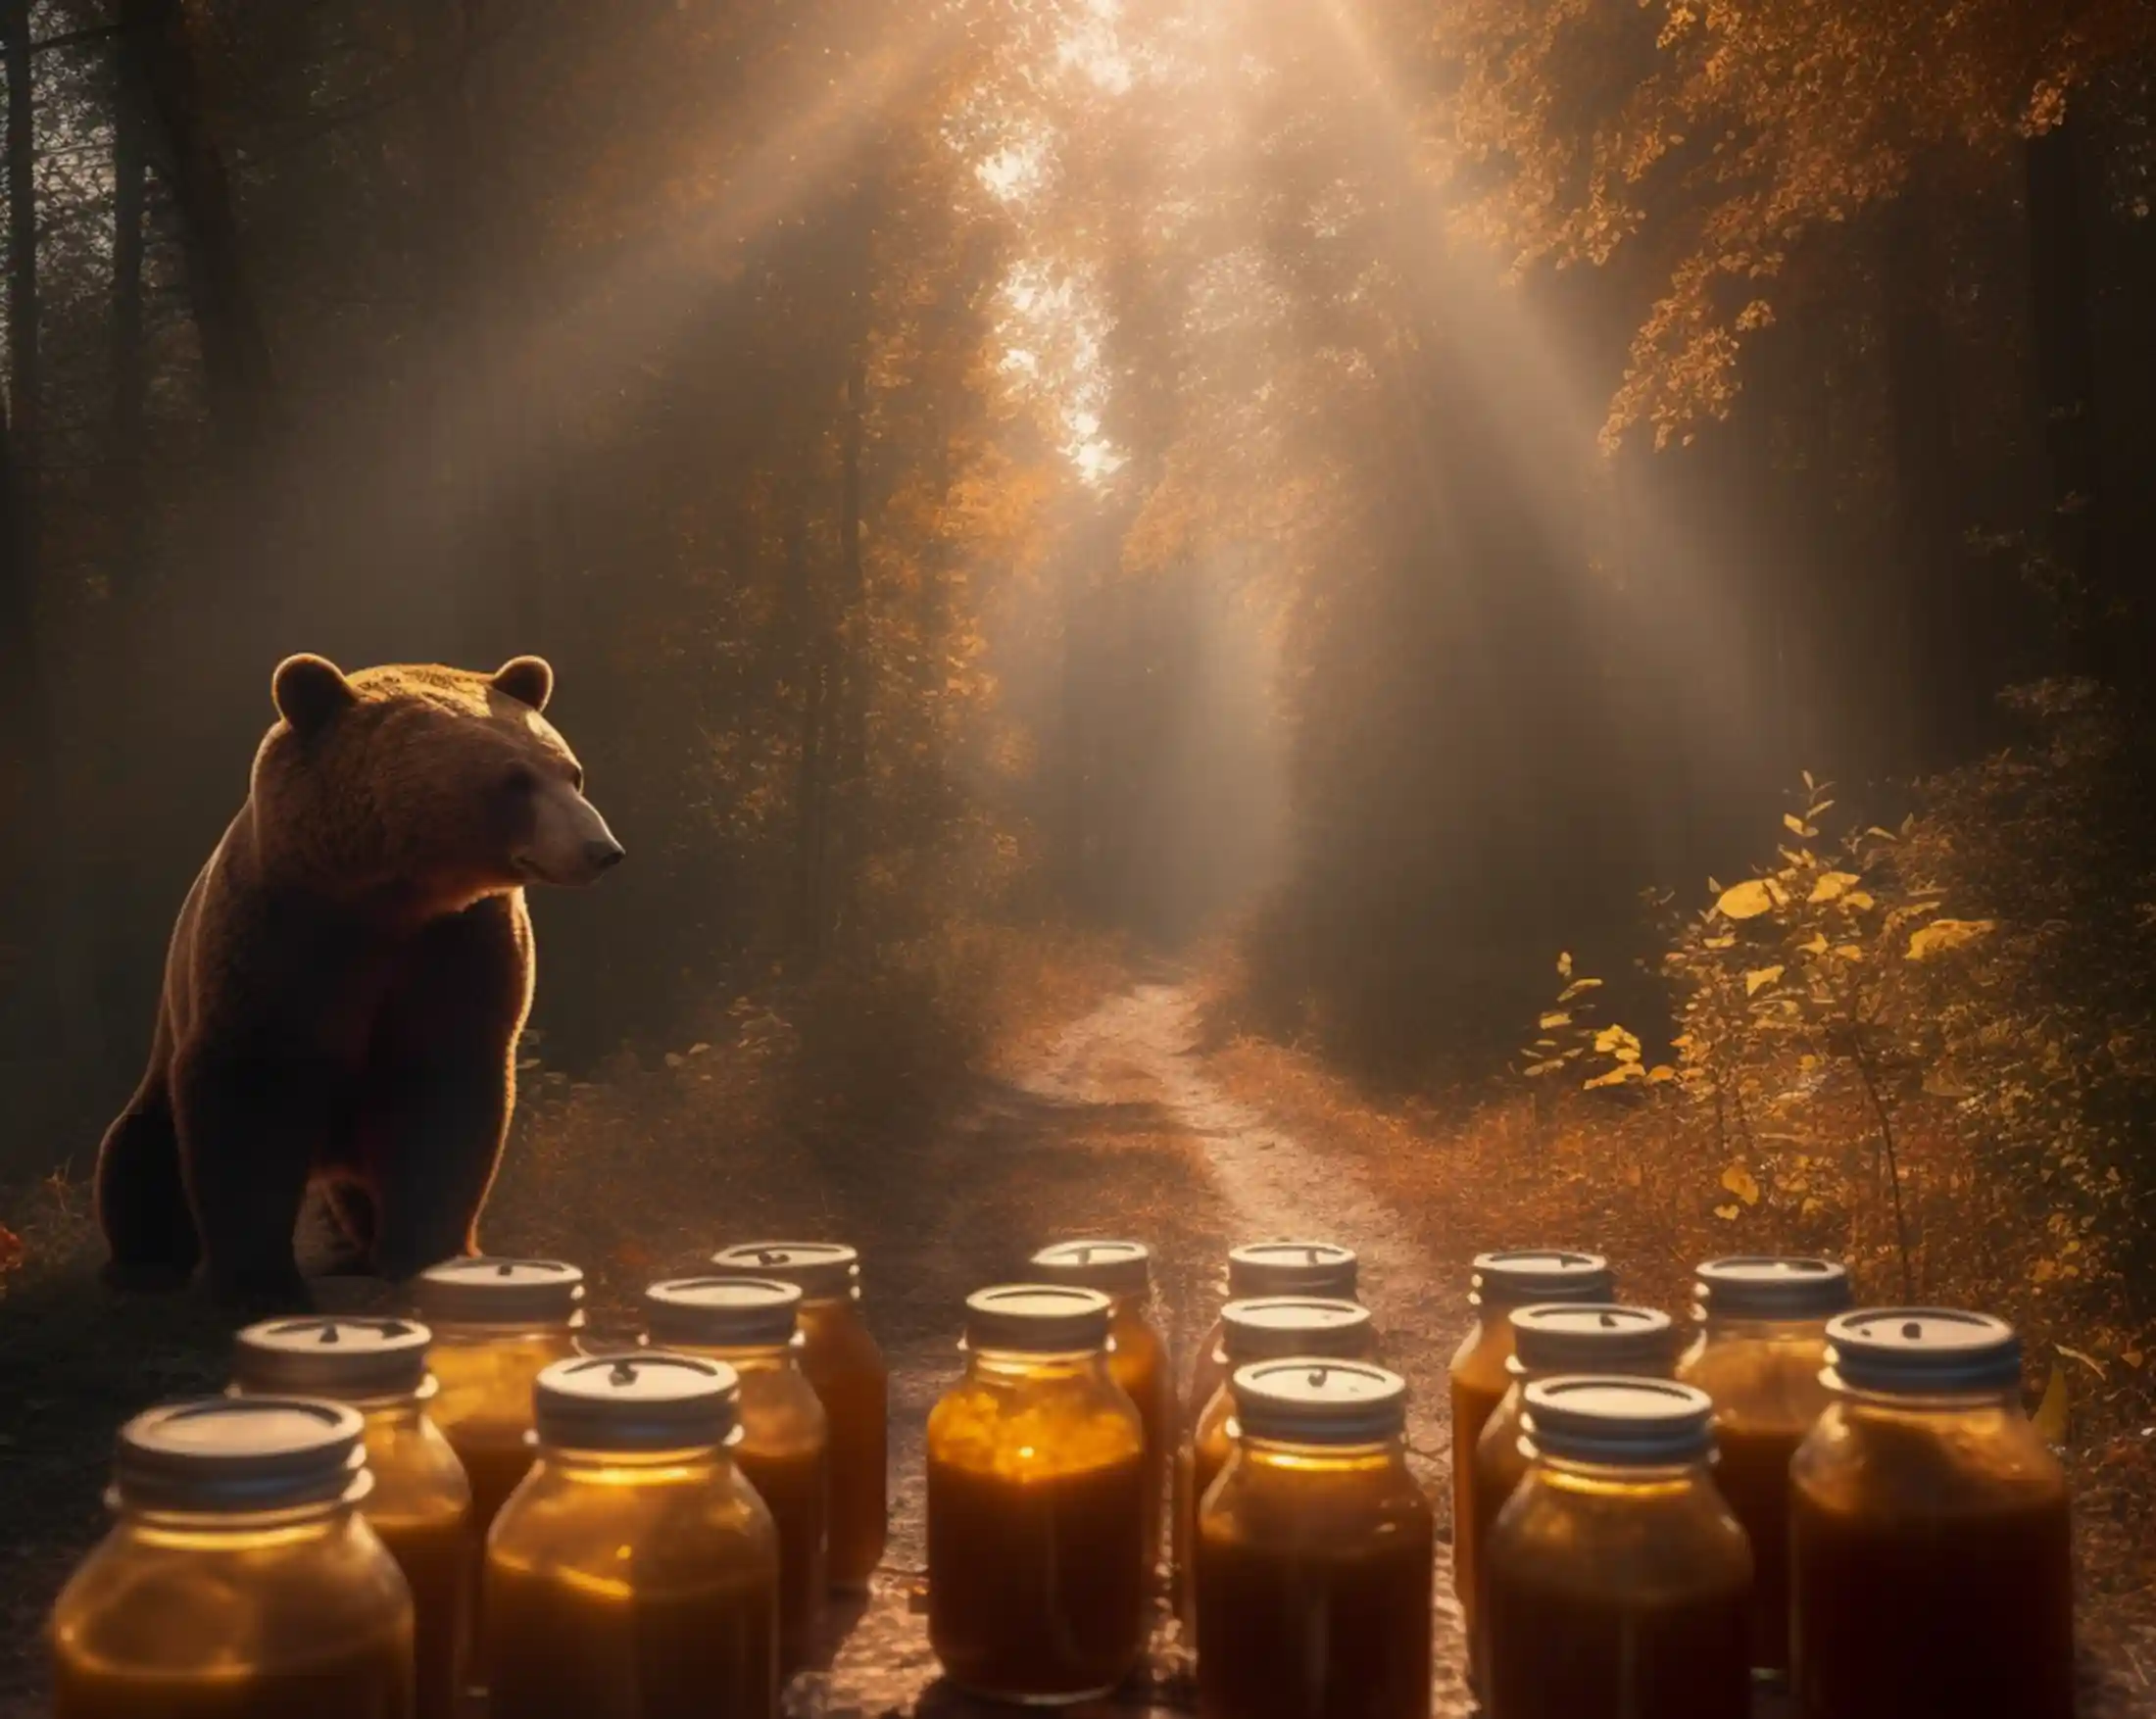 Bär auf Waldweg. Vor dem Tier sind Gläser mit Honig, Waldhonig und Waldblütenhonig